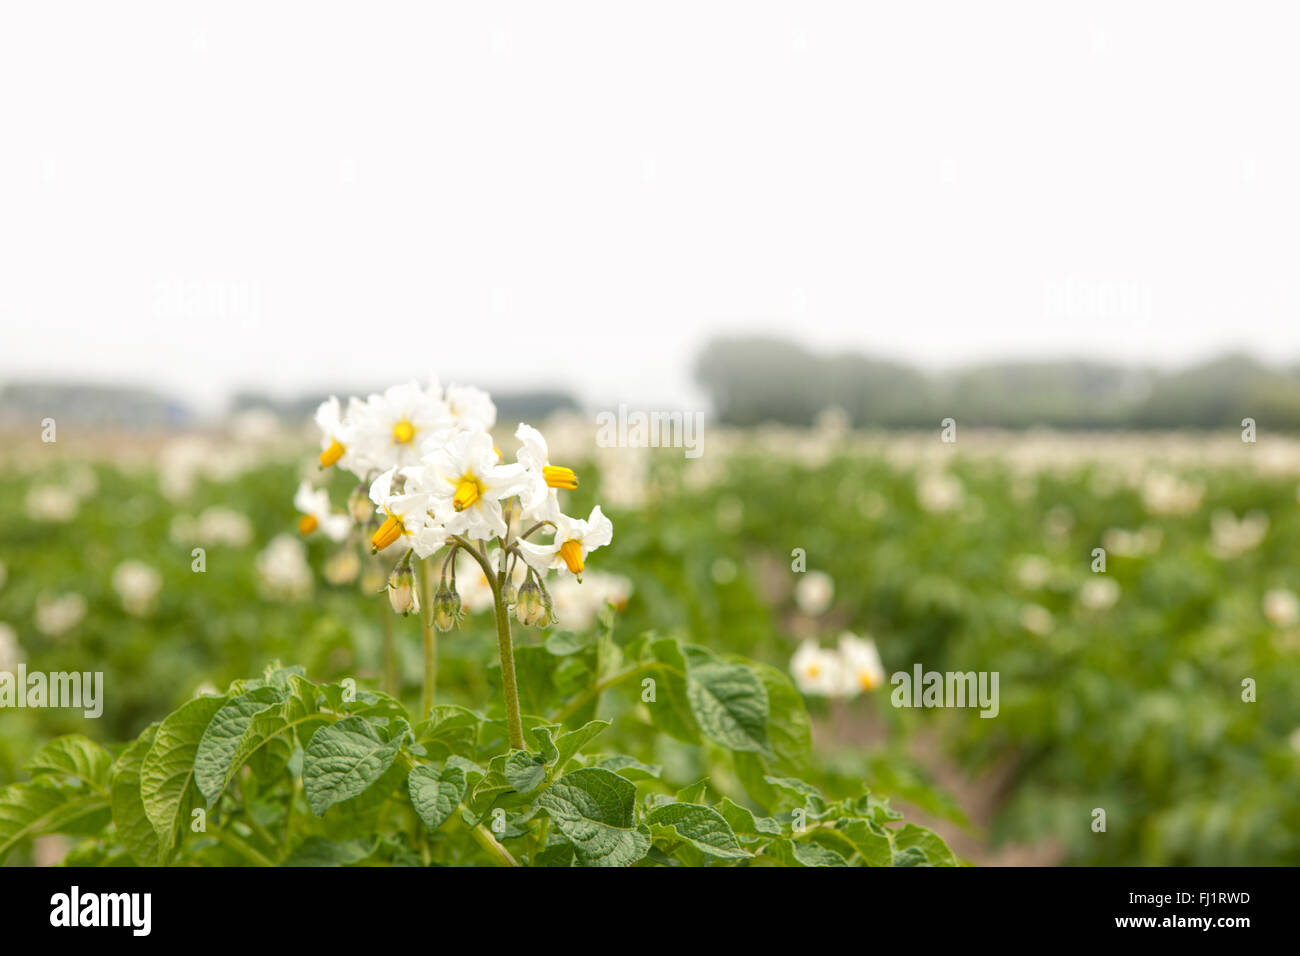 Flowering potato plants in a farm field in southwest Netherlands Stock Photo